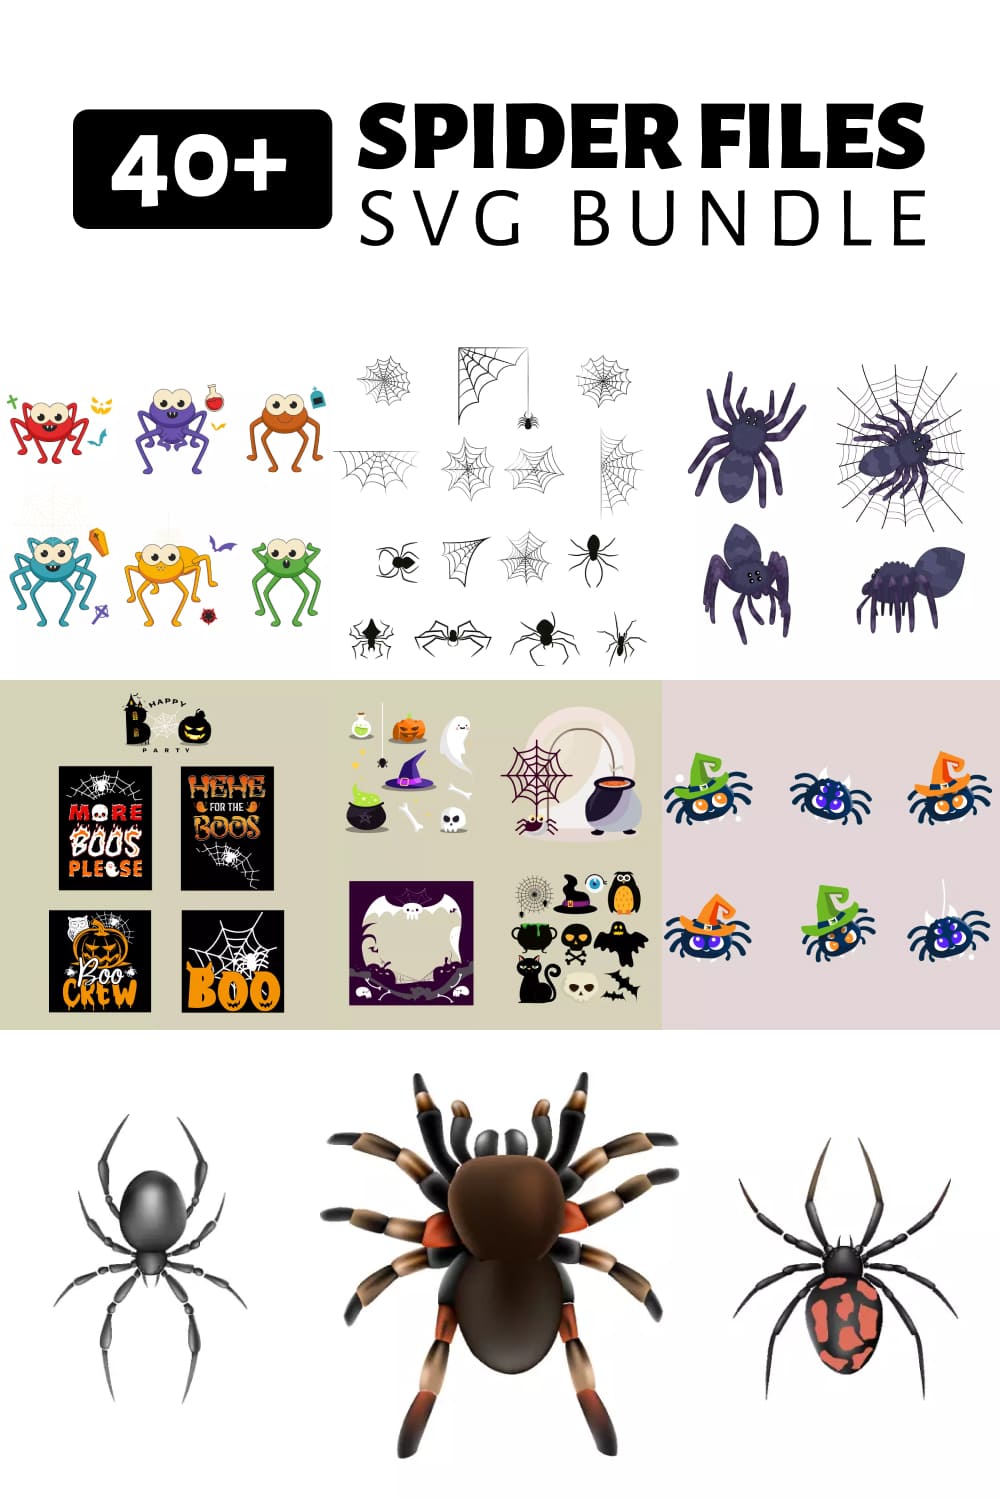 Spider SVG Files Bundle - pinterest image preview.